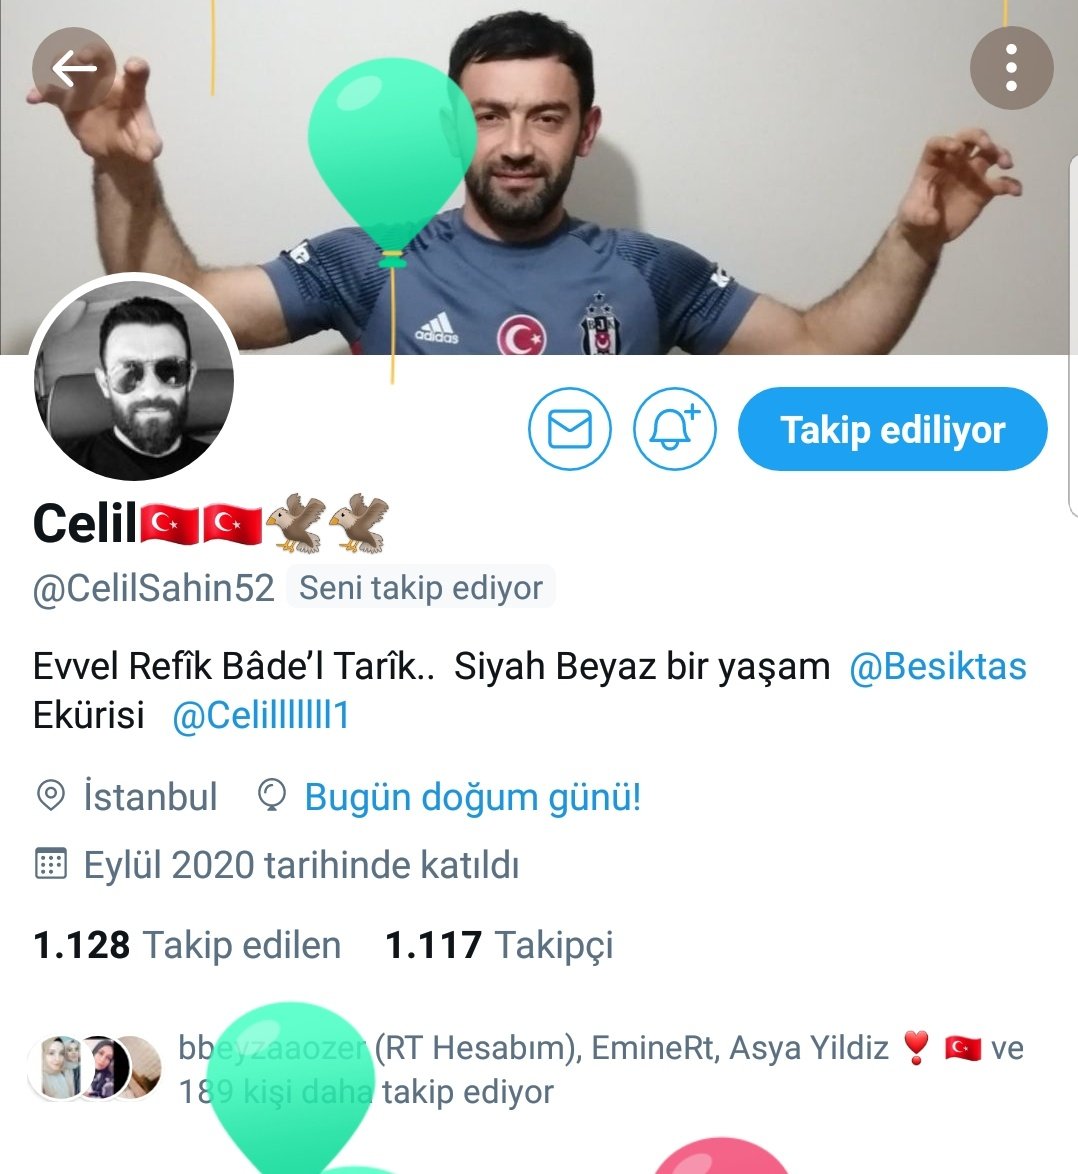 Güçlü Türkiye Grupları üyelerimizden @CelilSahin52 Bey'in ad gününü kutluyor, kendisine, ailesi ile birlikte sağlıklı uzun ömürler diliyoruz.